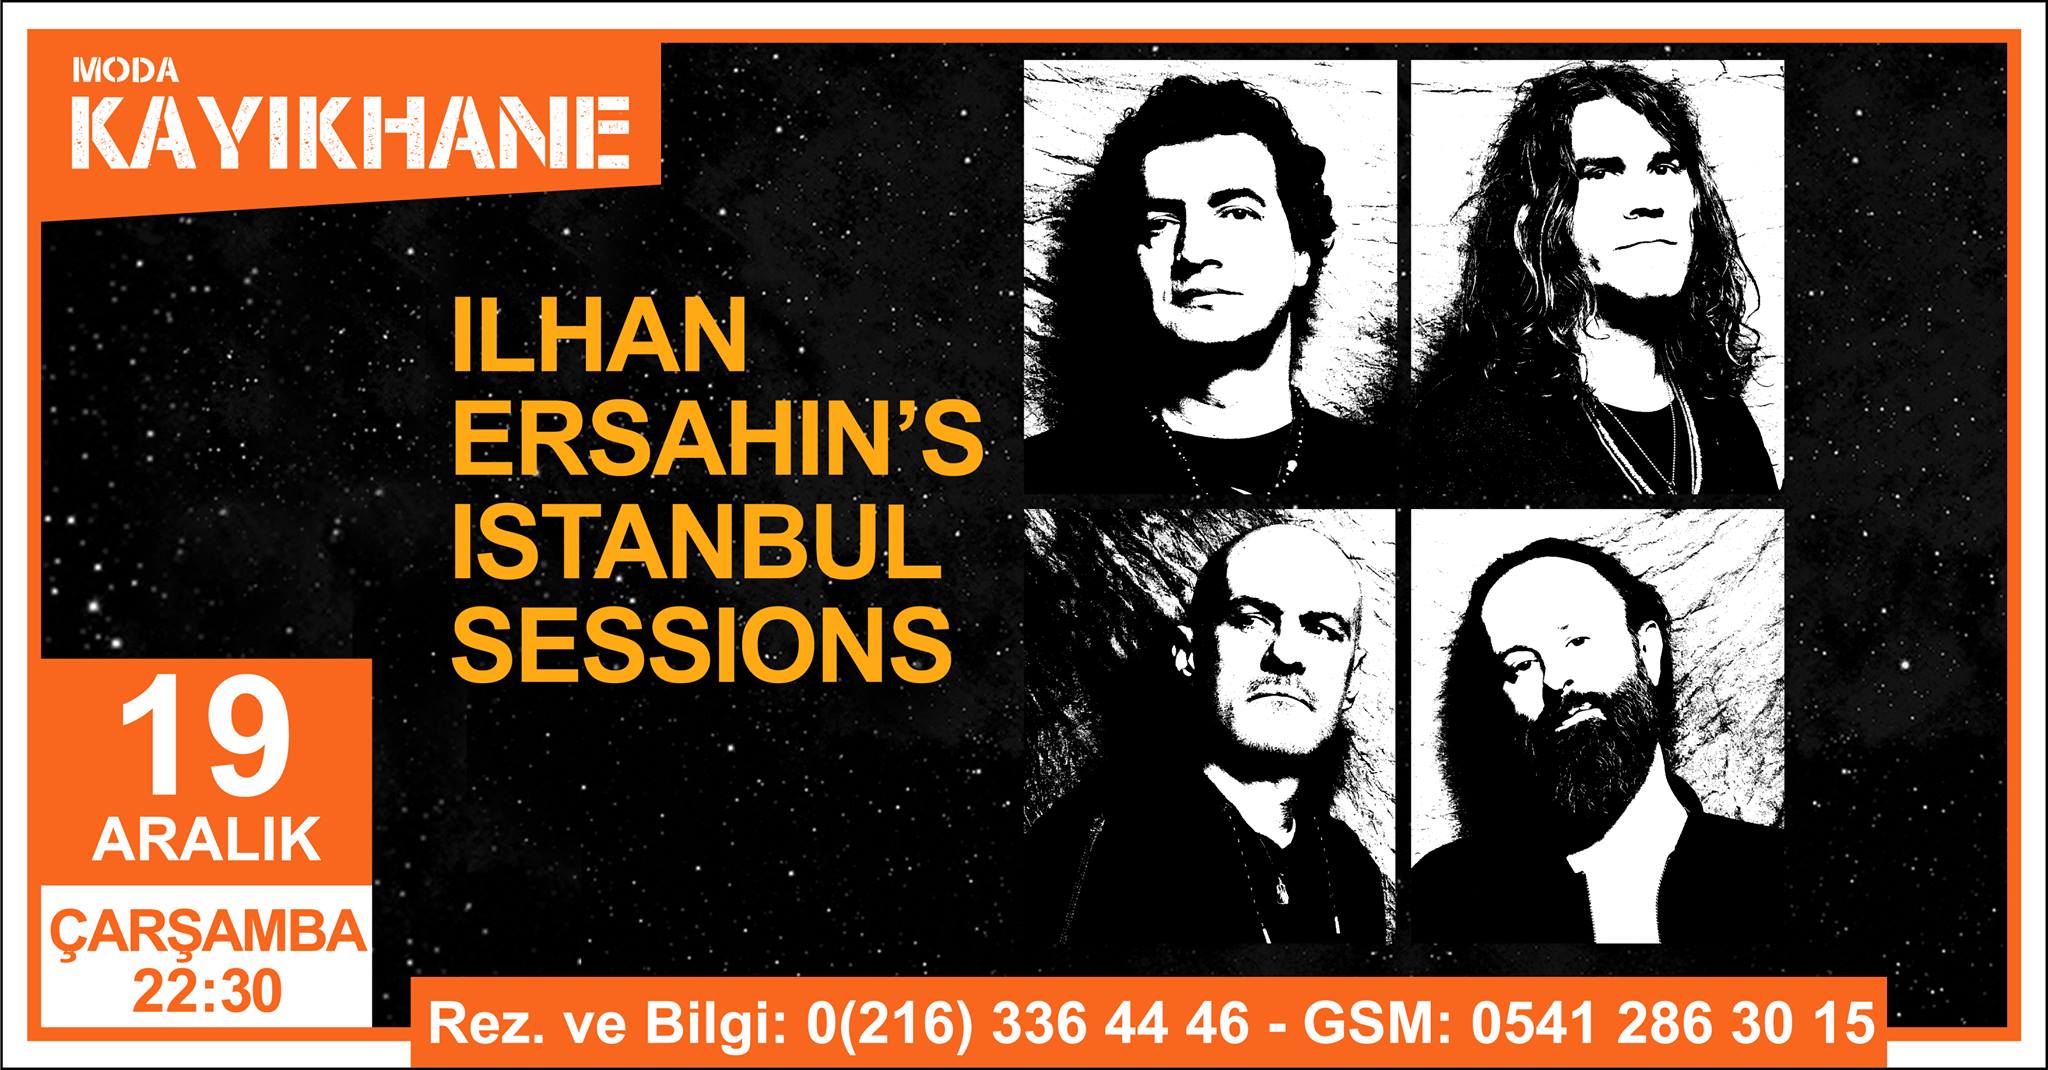 İlhan Erşahins İstanbul Sessions - Moda Kayıkhane